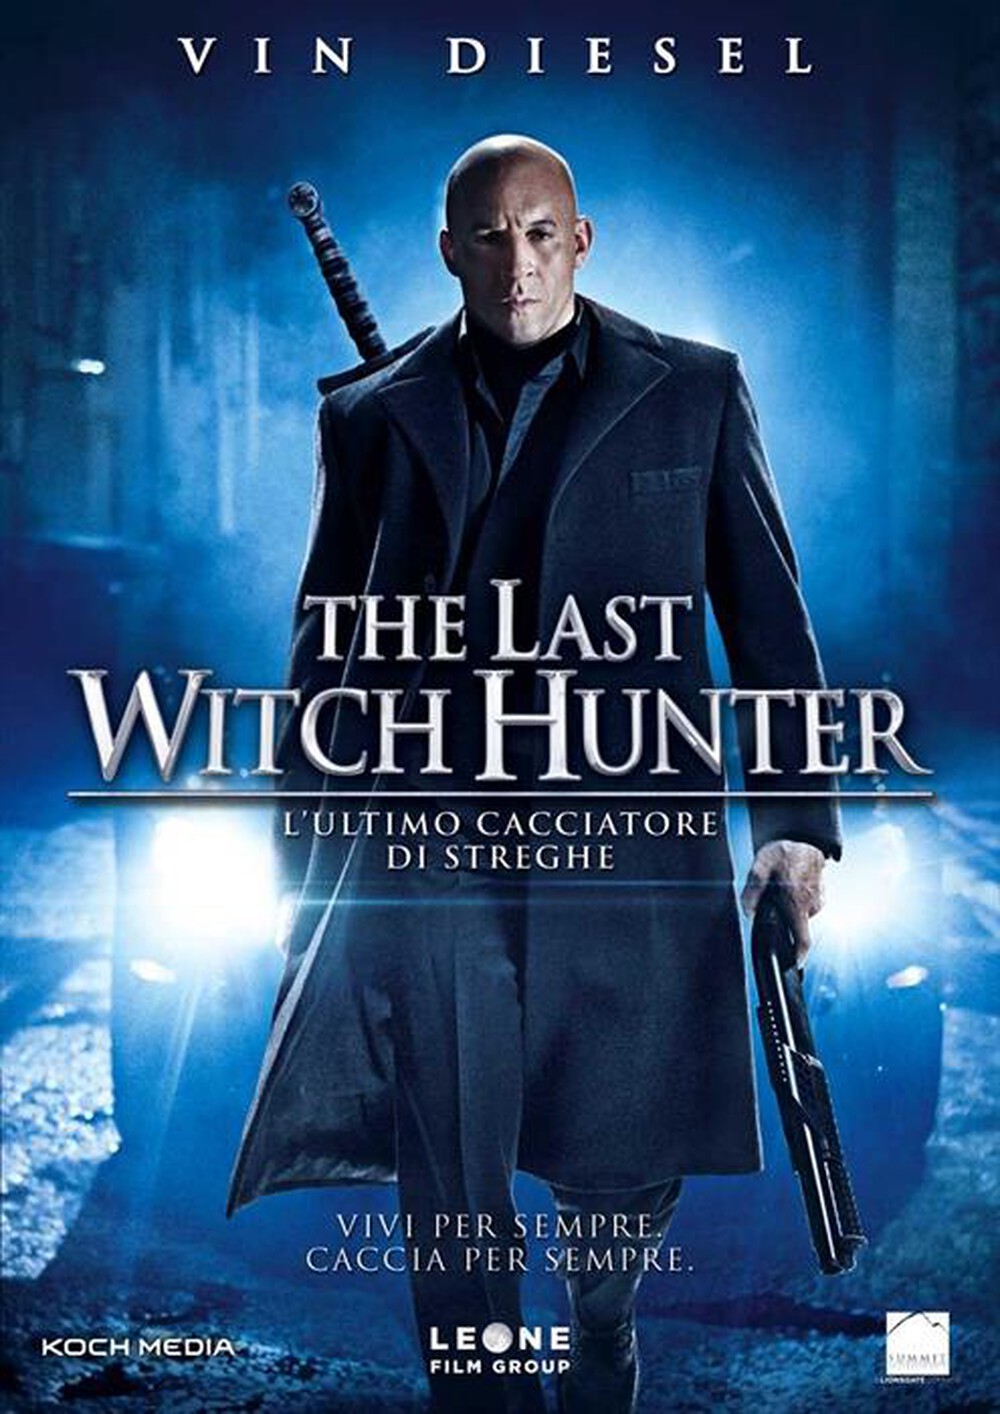 "KOCH MEDIA - Last Witch Hunter (The) - L'Ultimo Cacciatore Di"